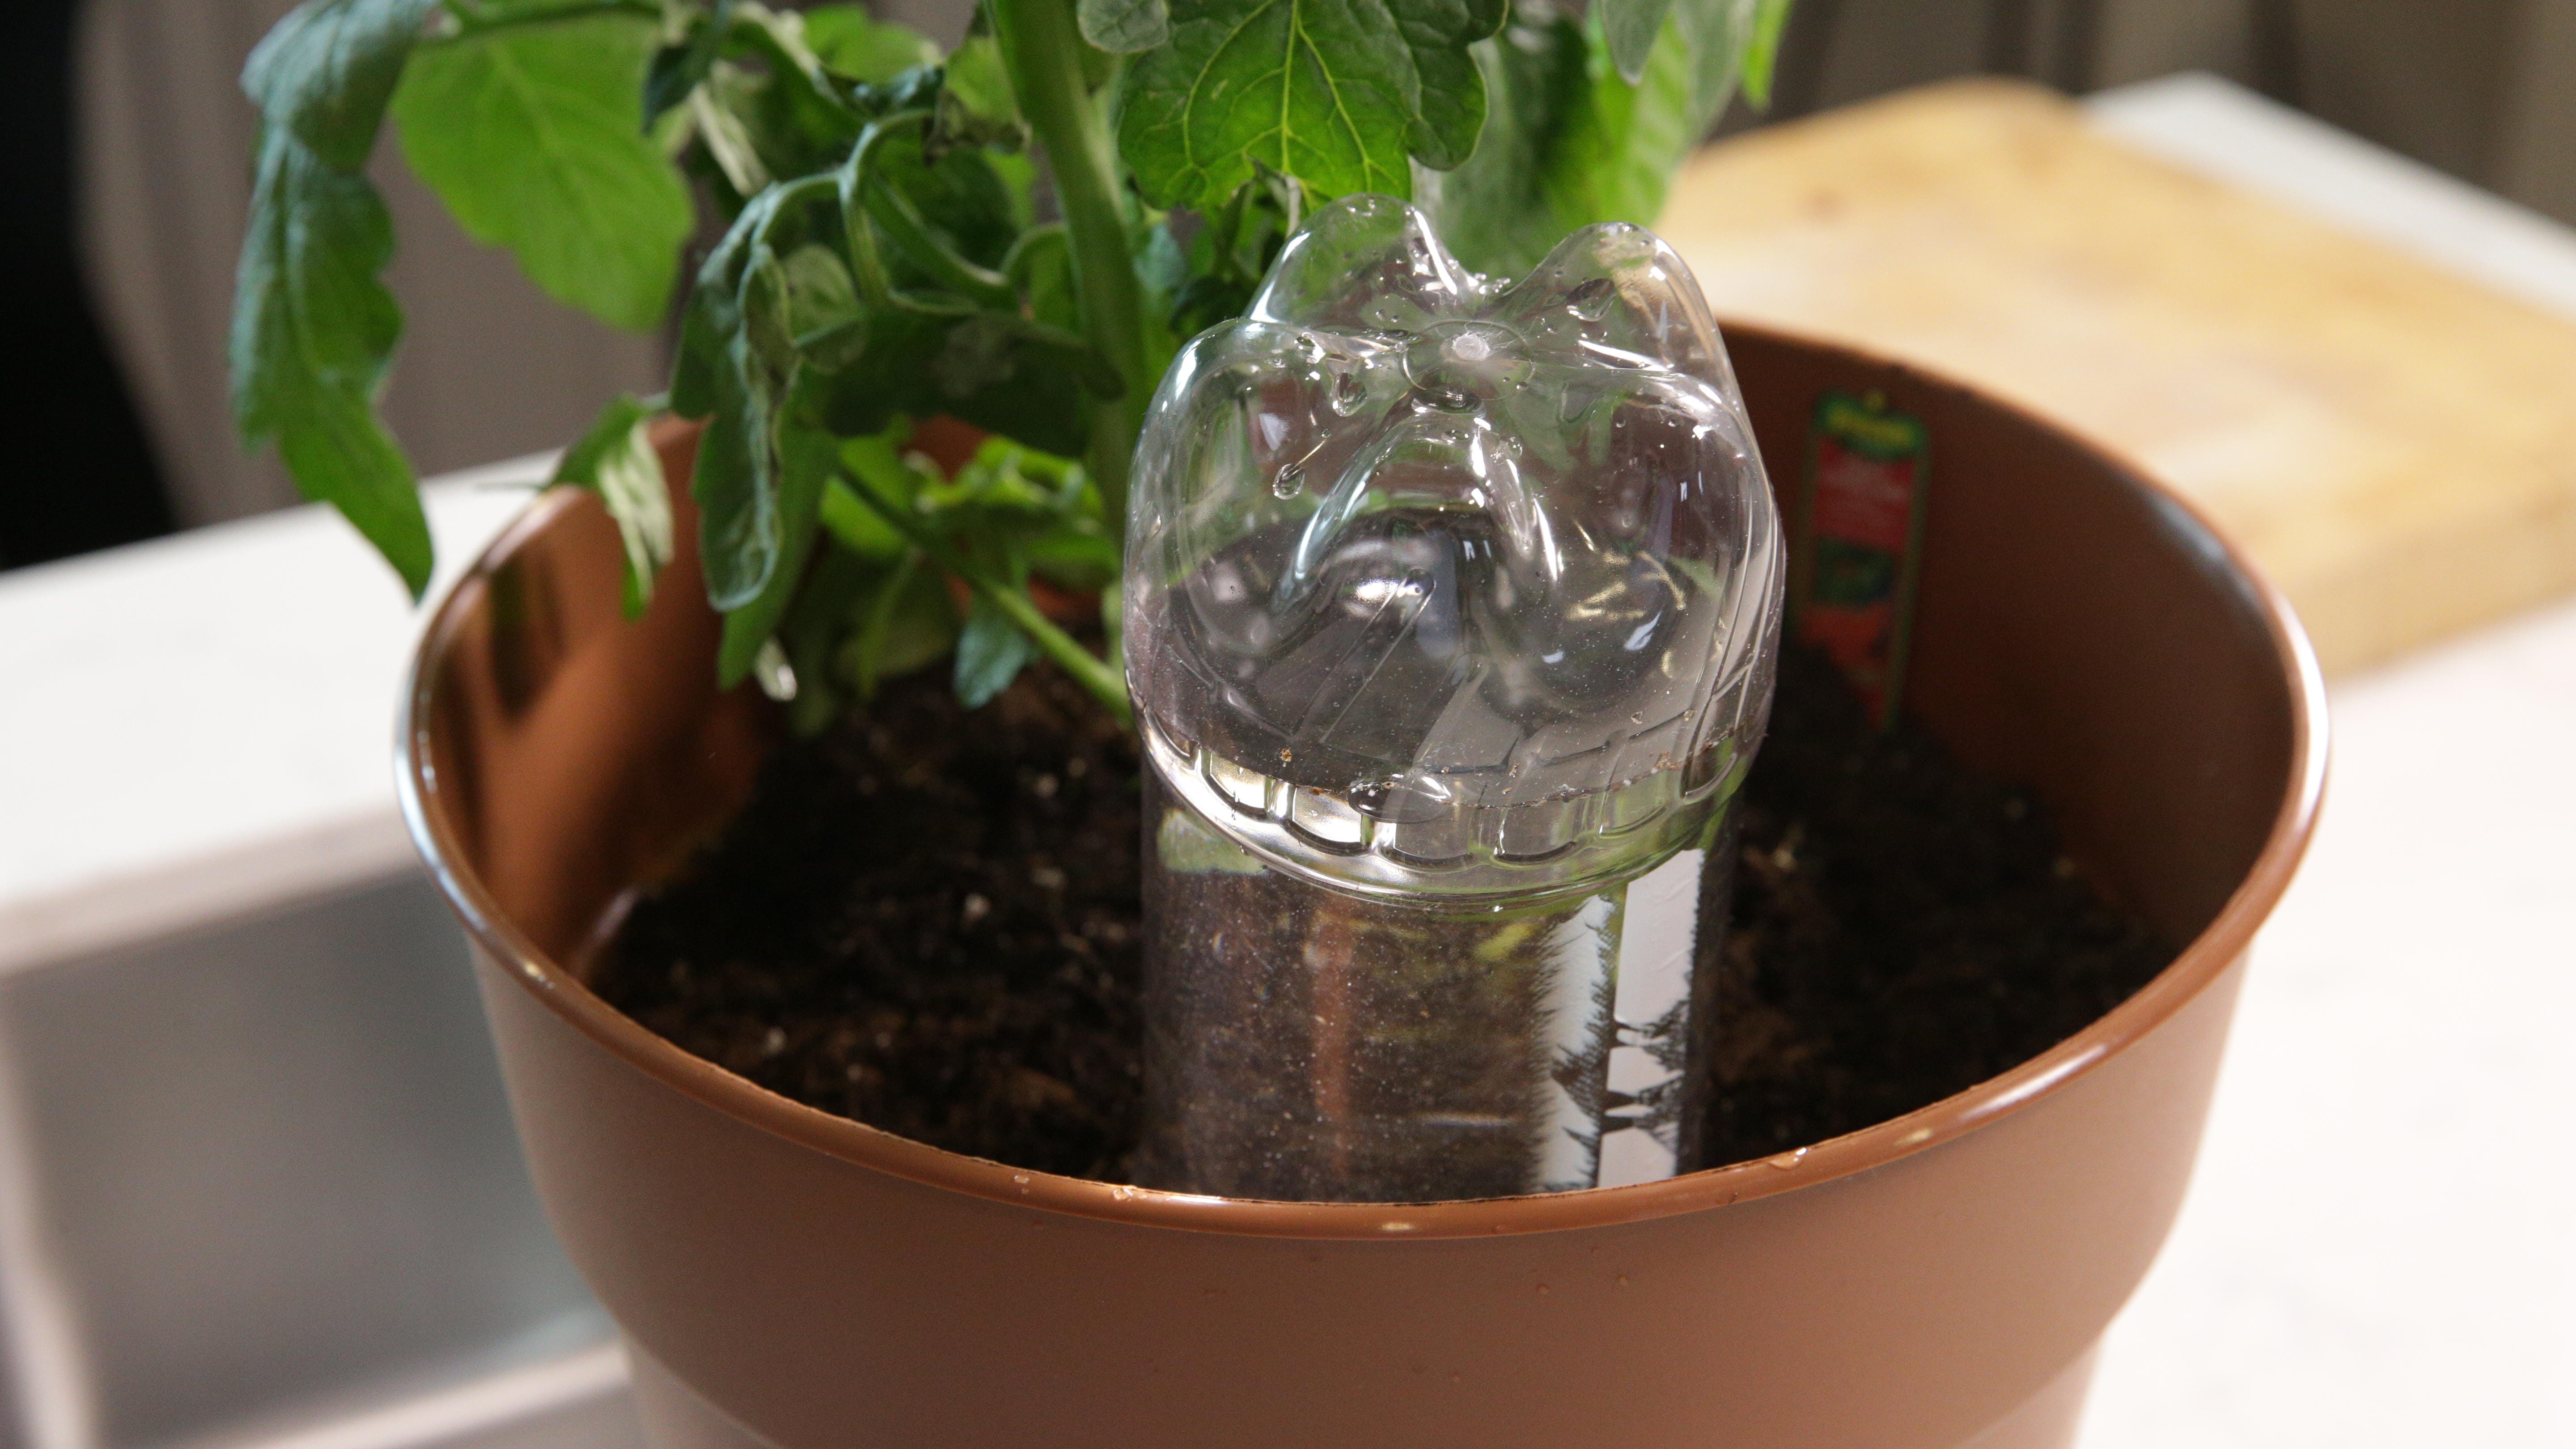 Plastikwasserflasche umgedreht und in Erde neben einer Pflanze in einem Topf stecken